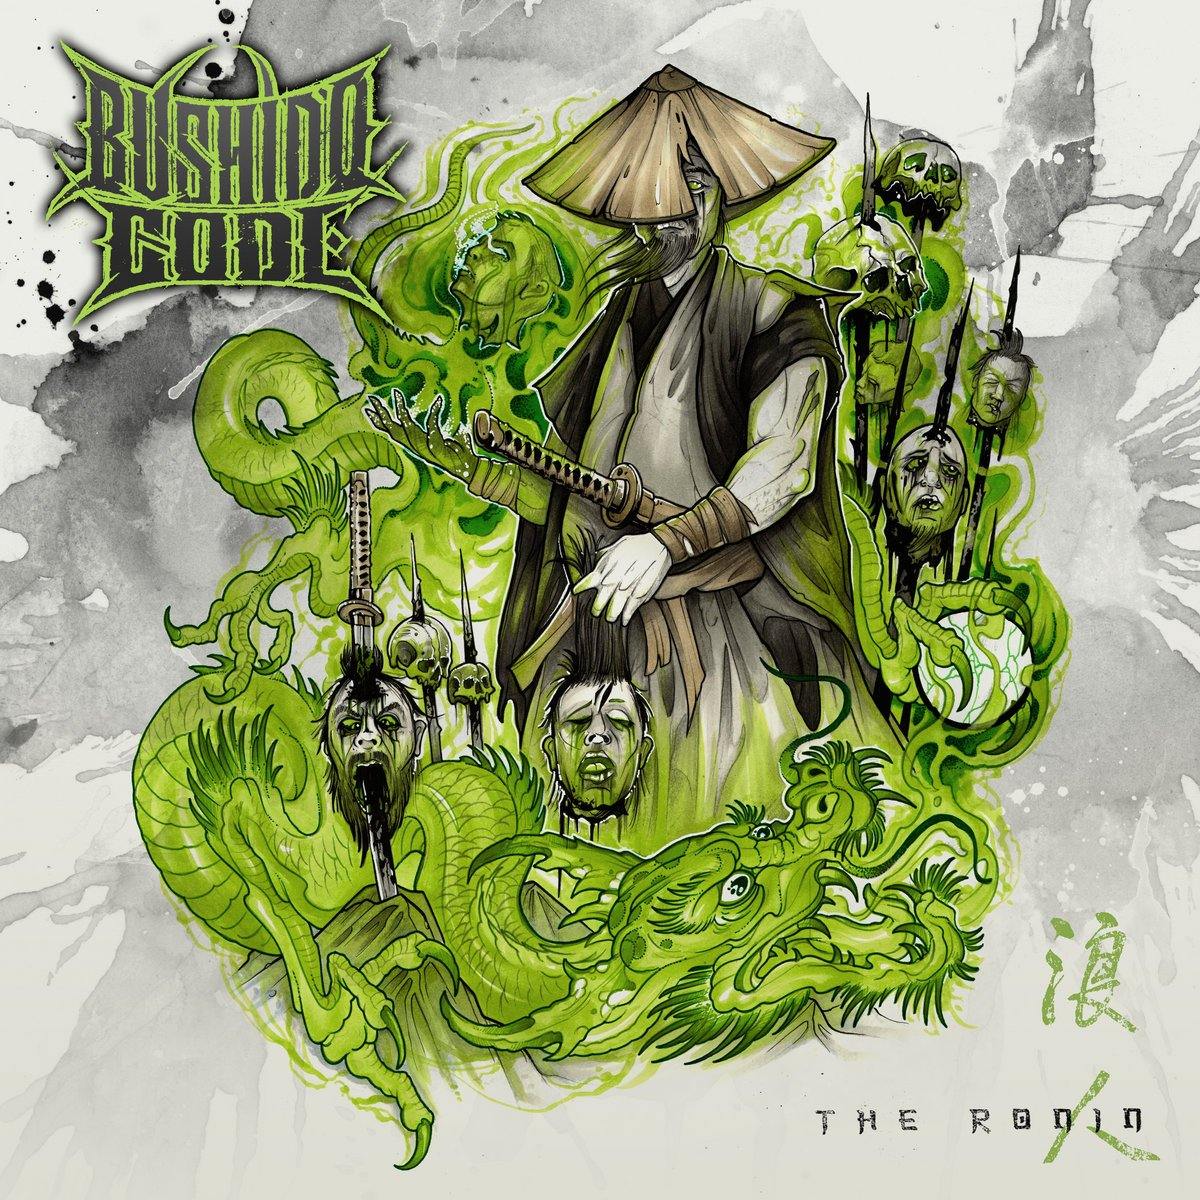 Buy – Bushido Code "The Ronin" CD – Band & Music Merch – Cold Cuts Merch